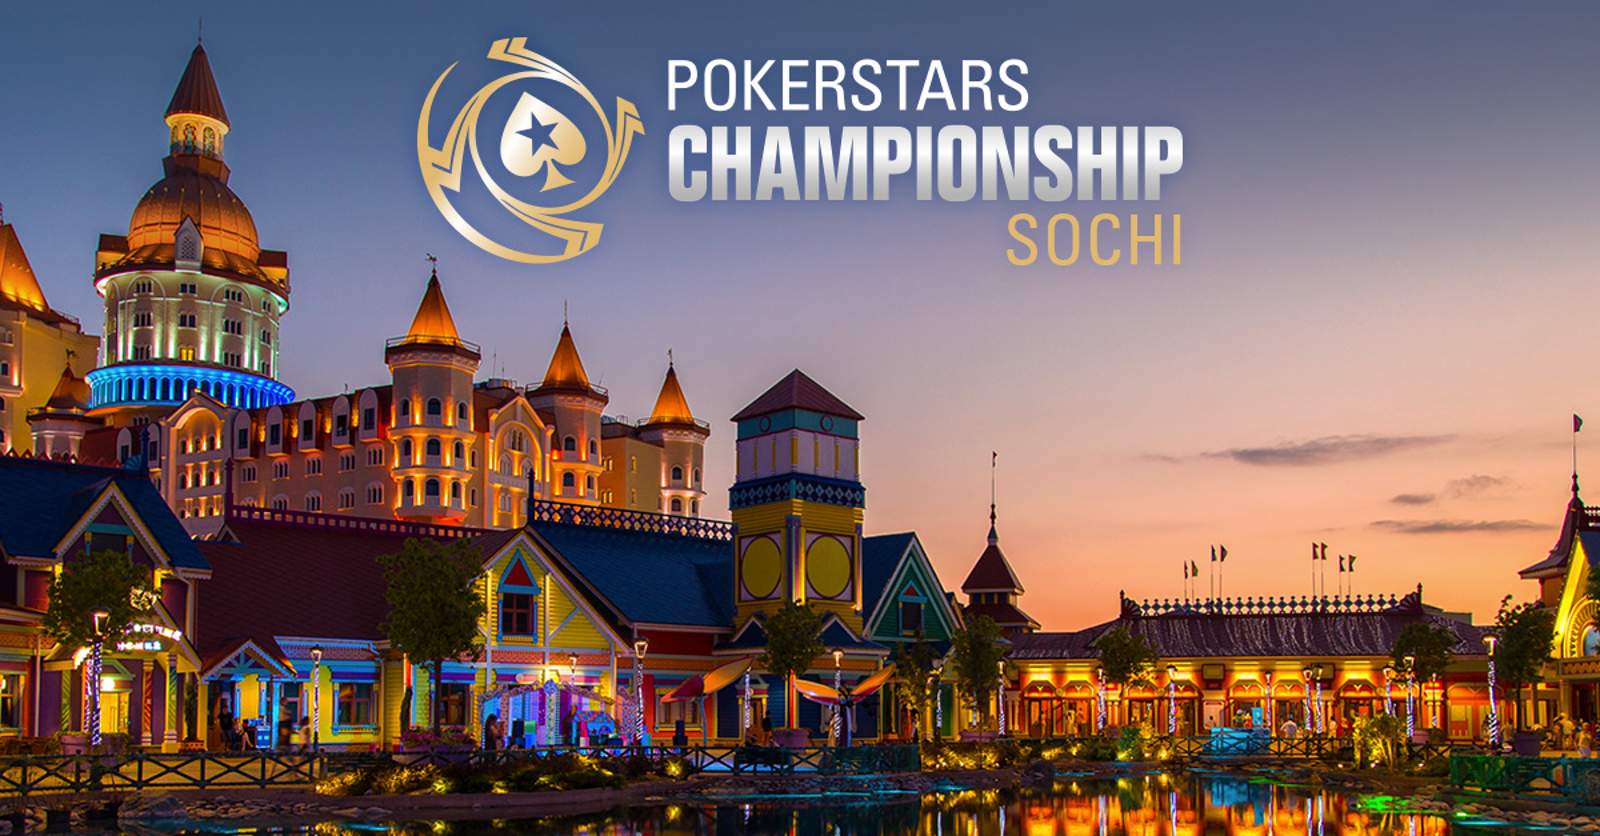 PokerStars Announces Championship Event in Sochi, Russia